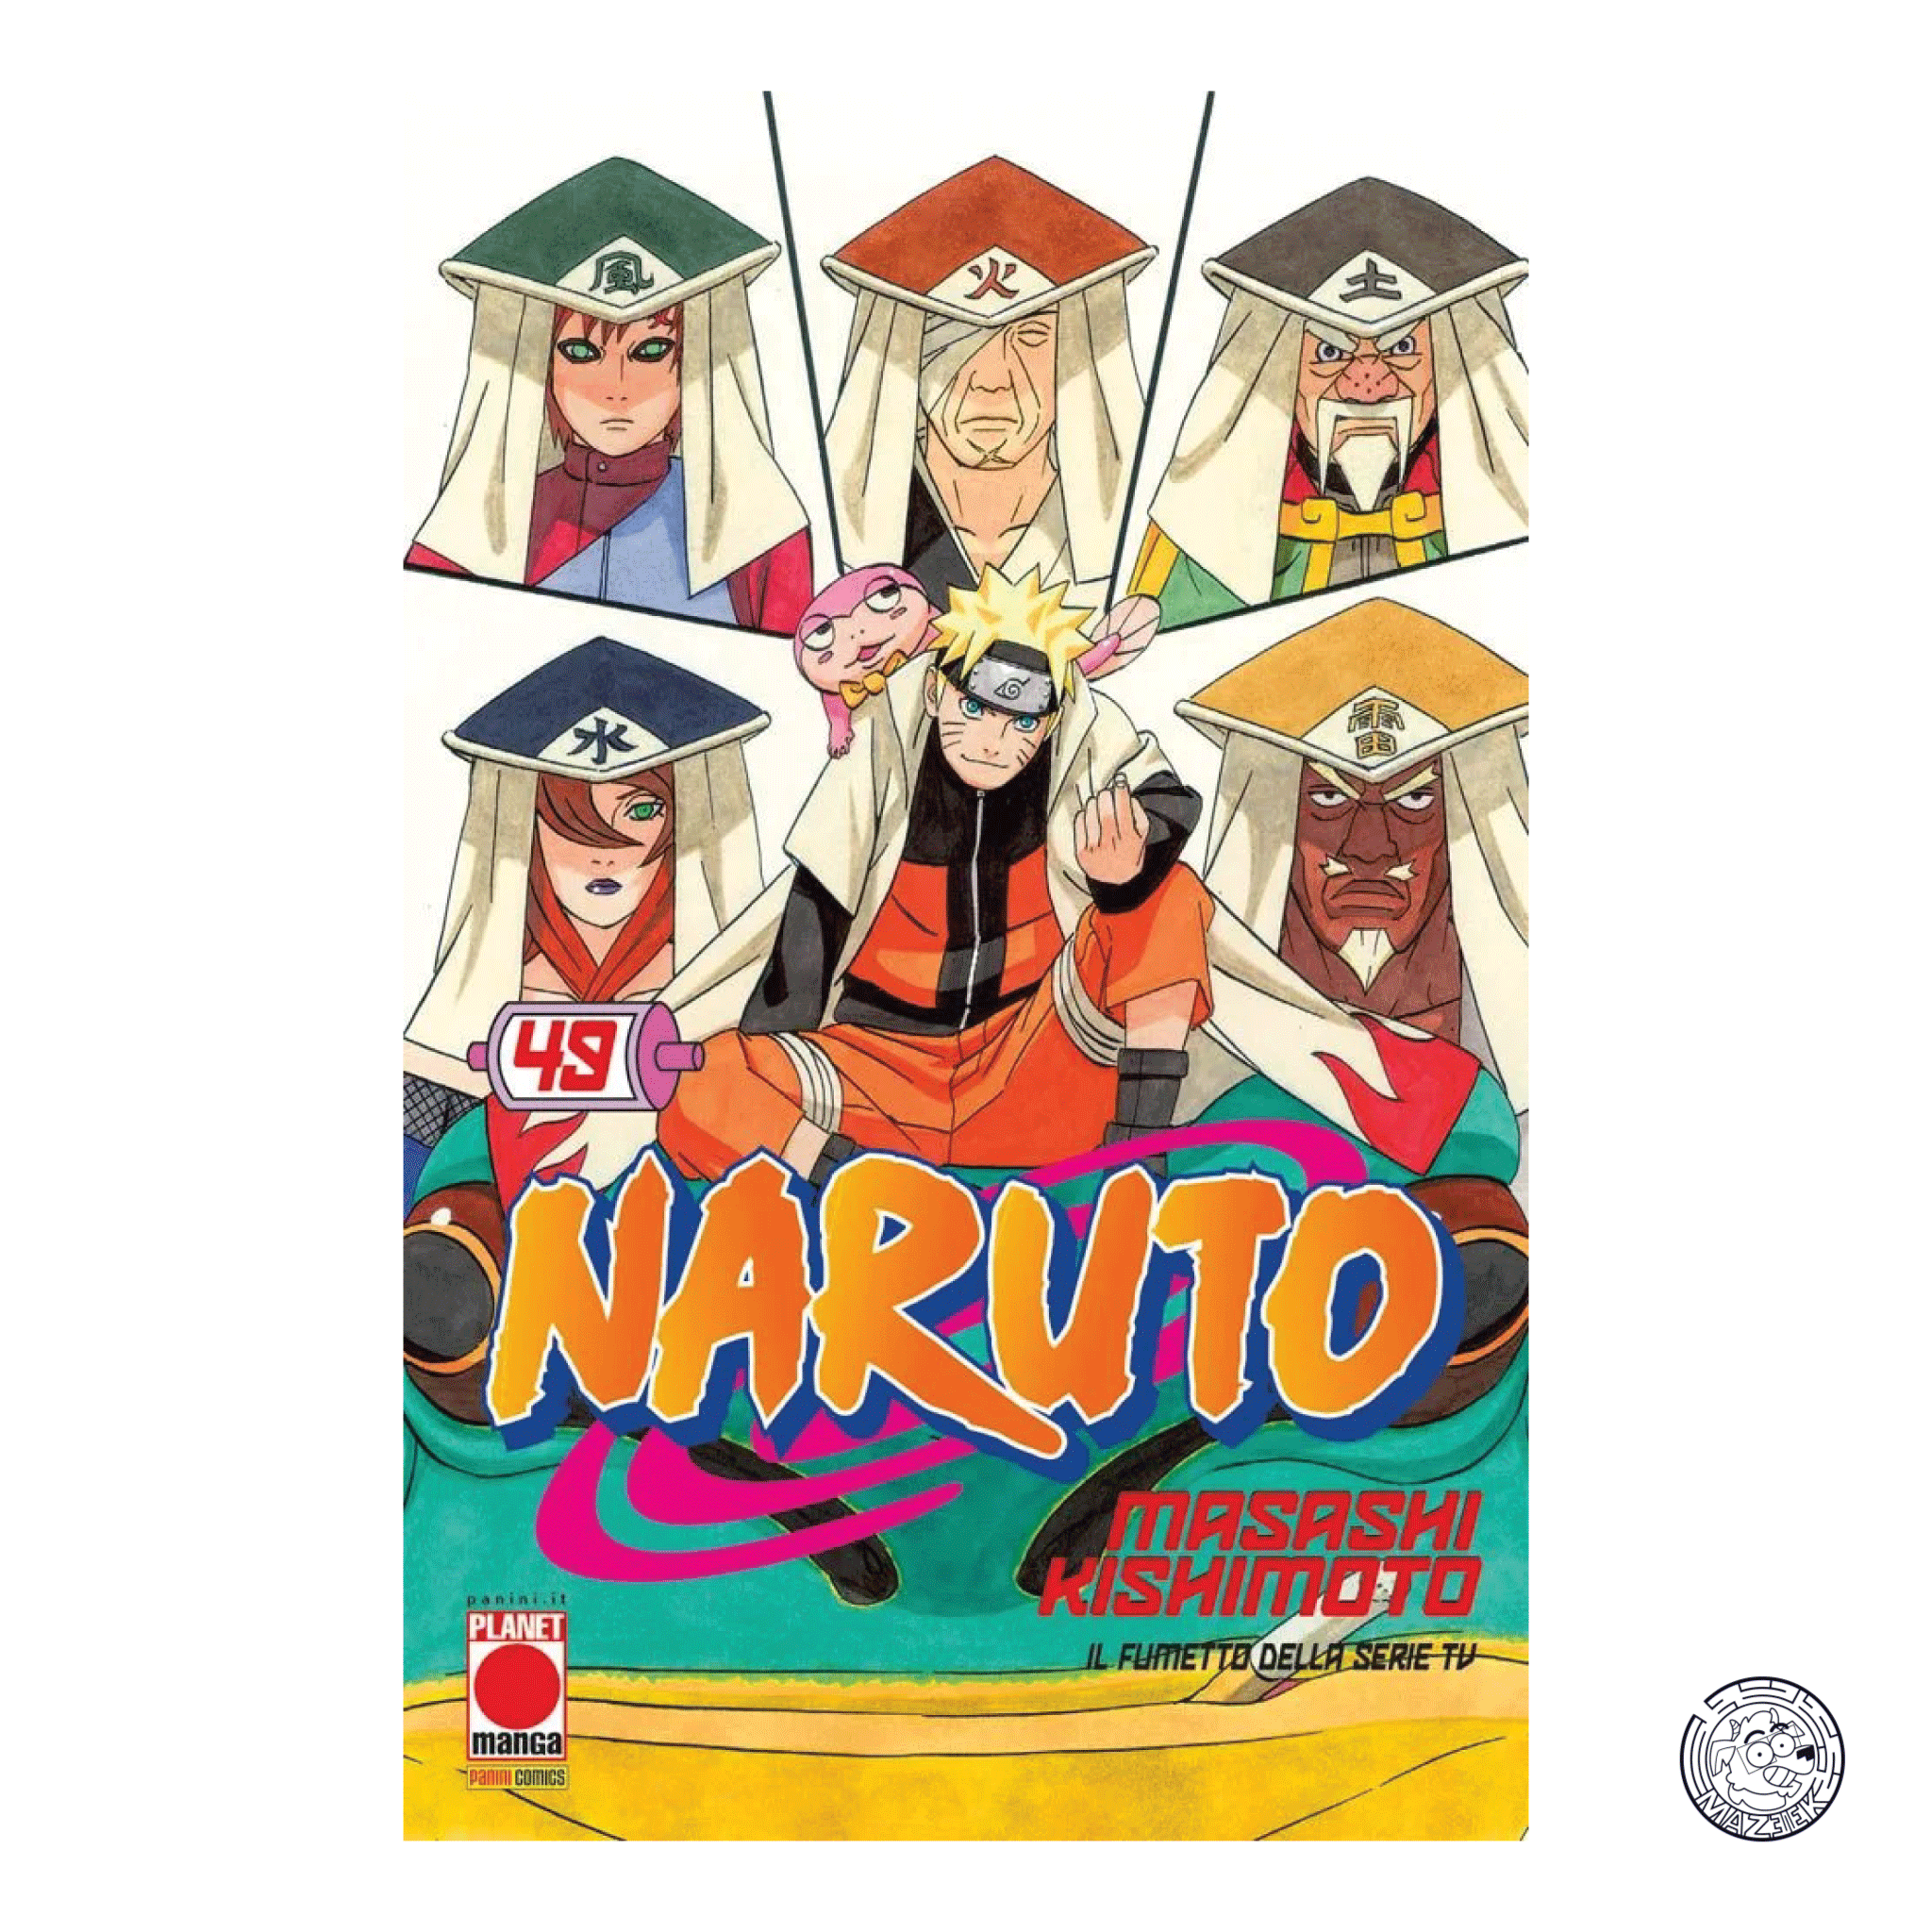 Naruto The Myth 49 – Reprint 2